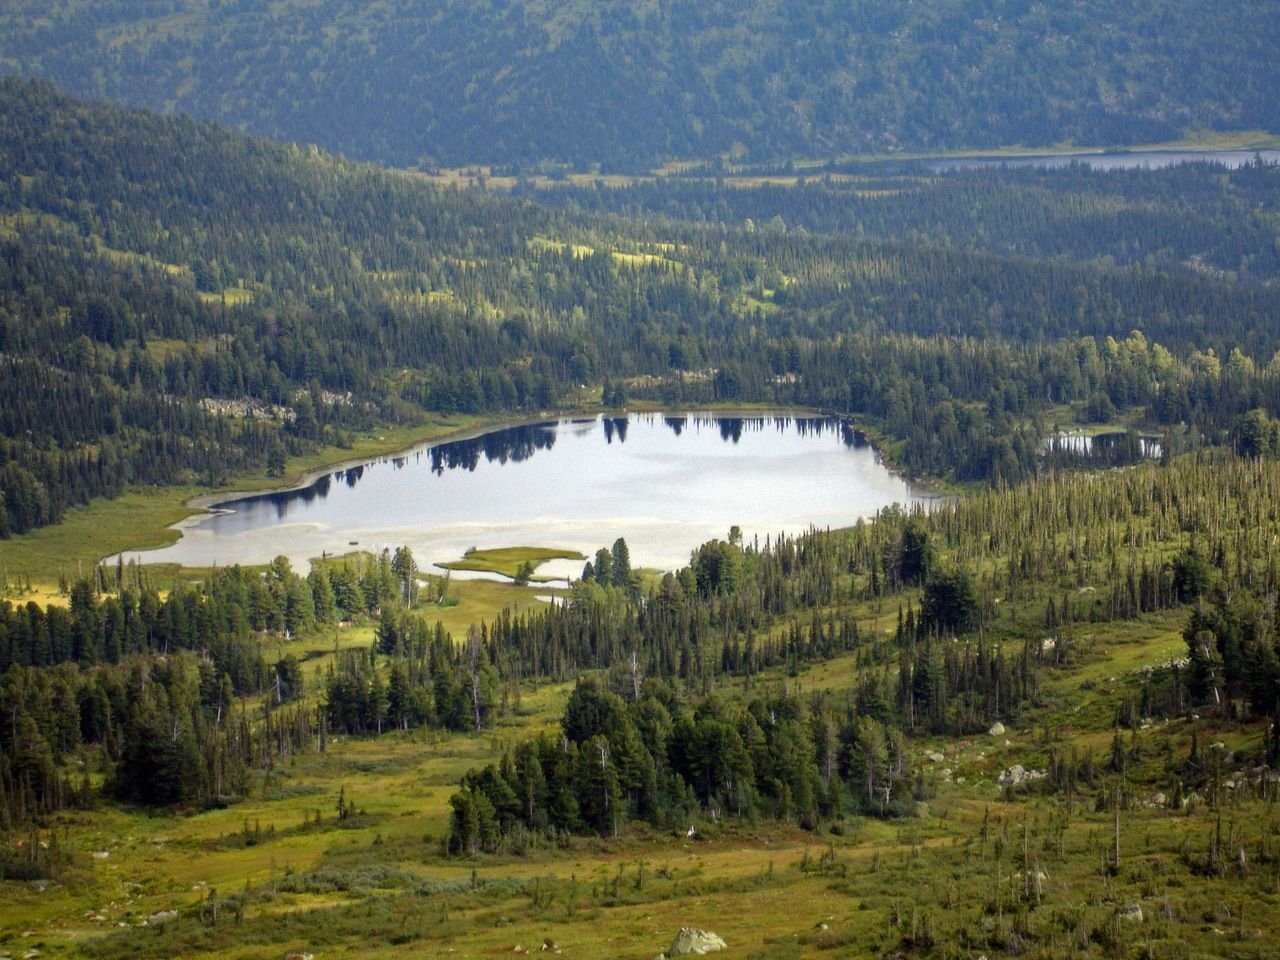 озера кемеровской области фото